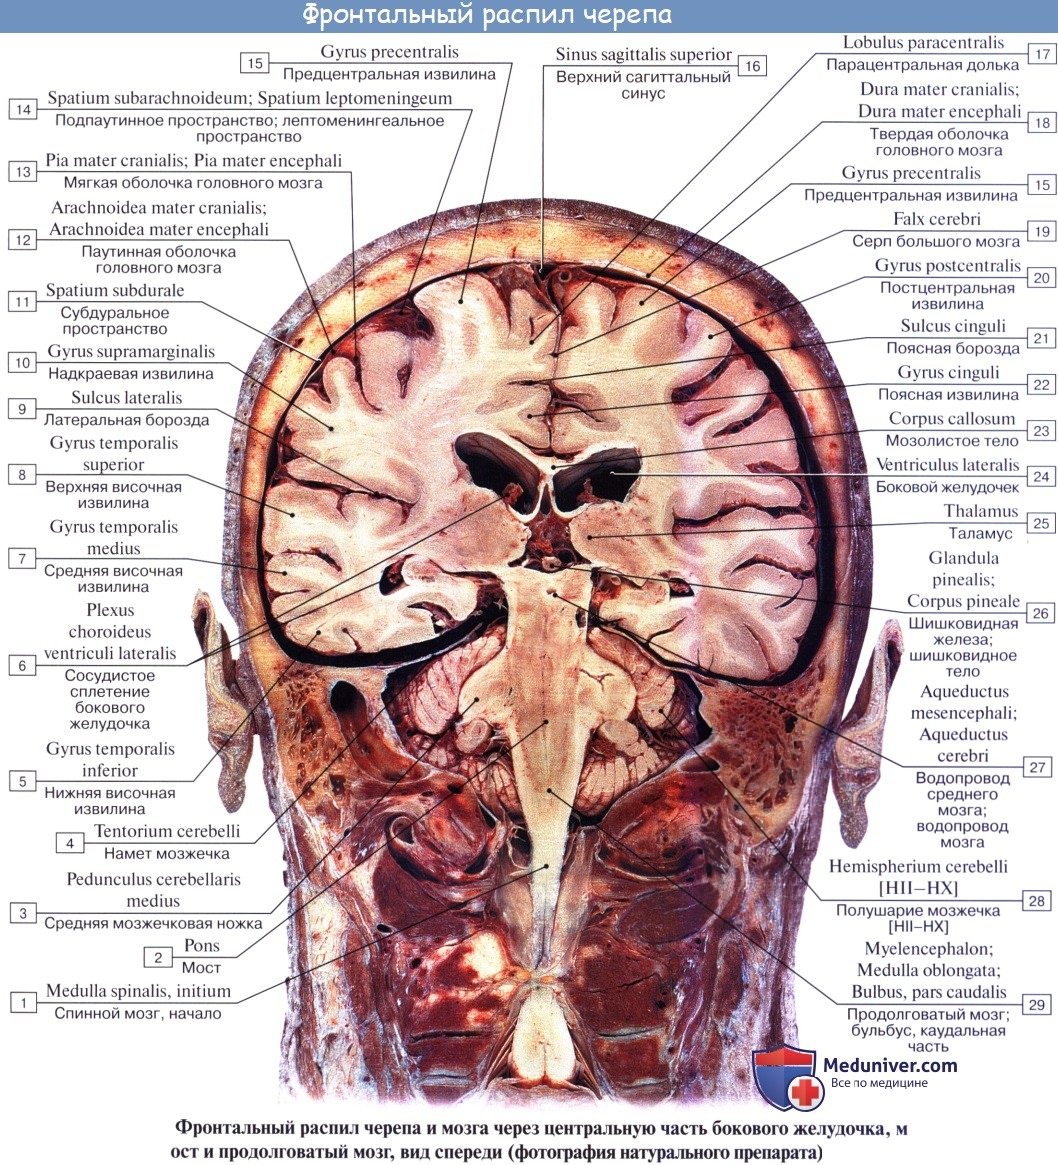 anatomia mozgechka 17a